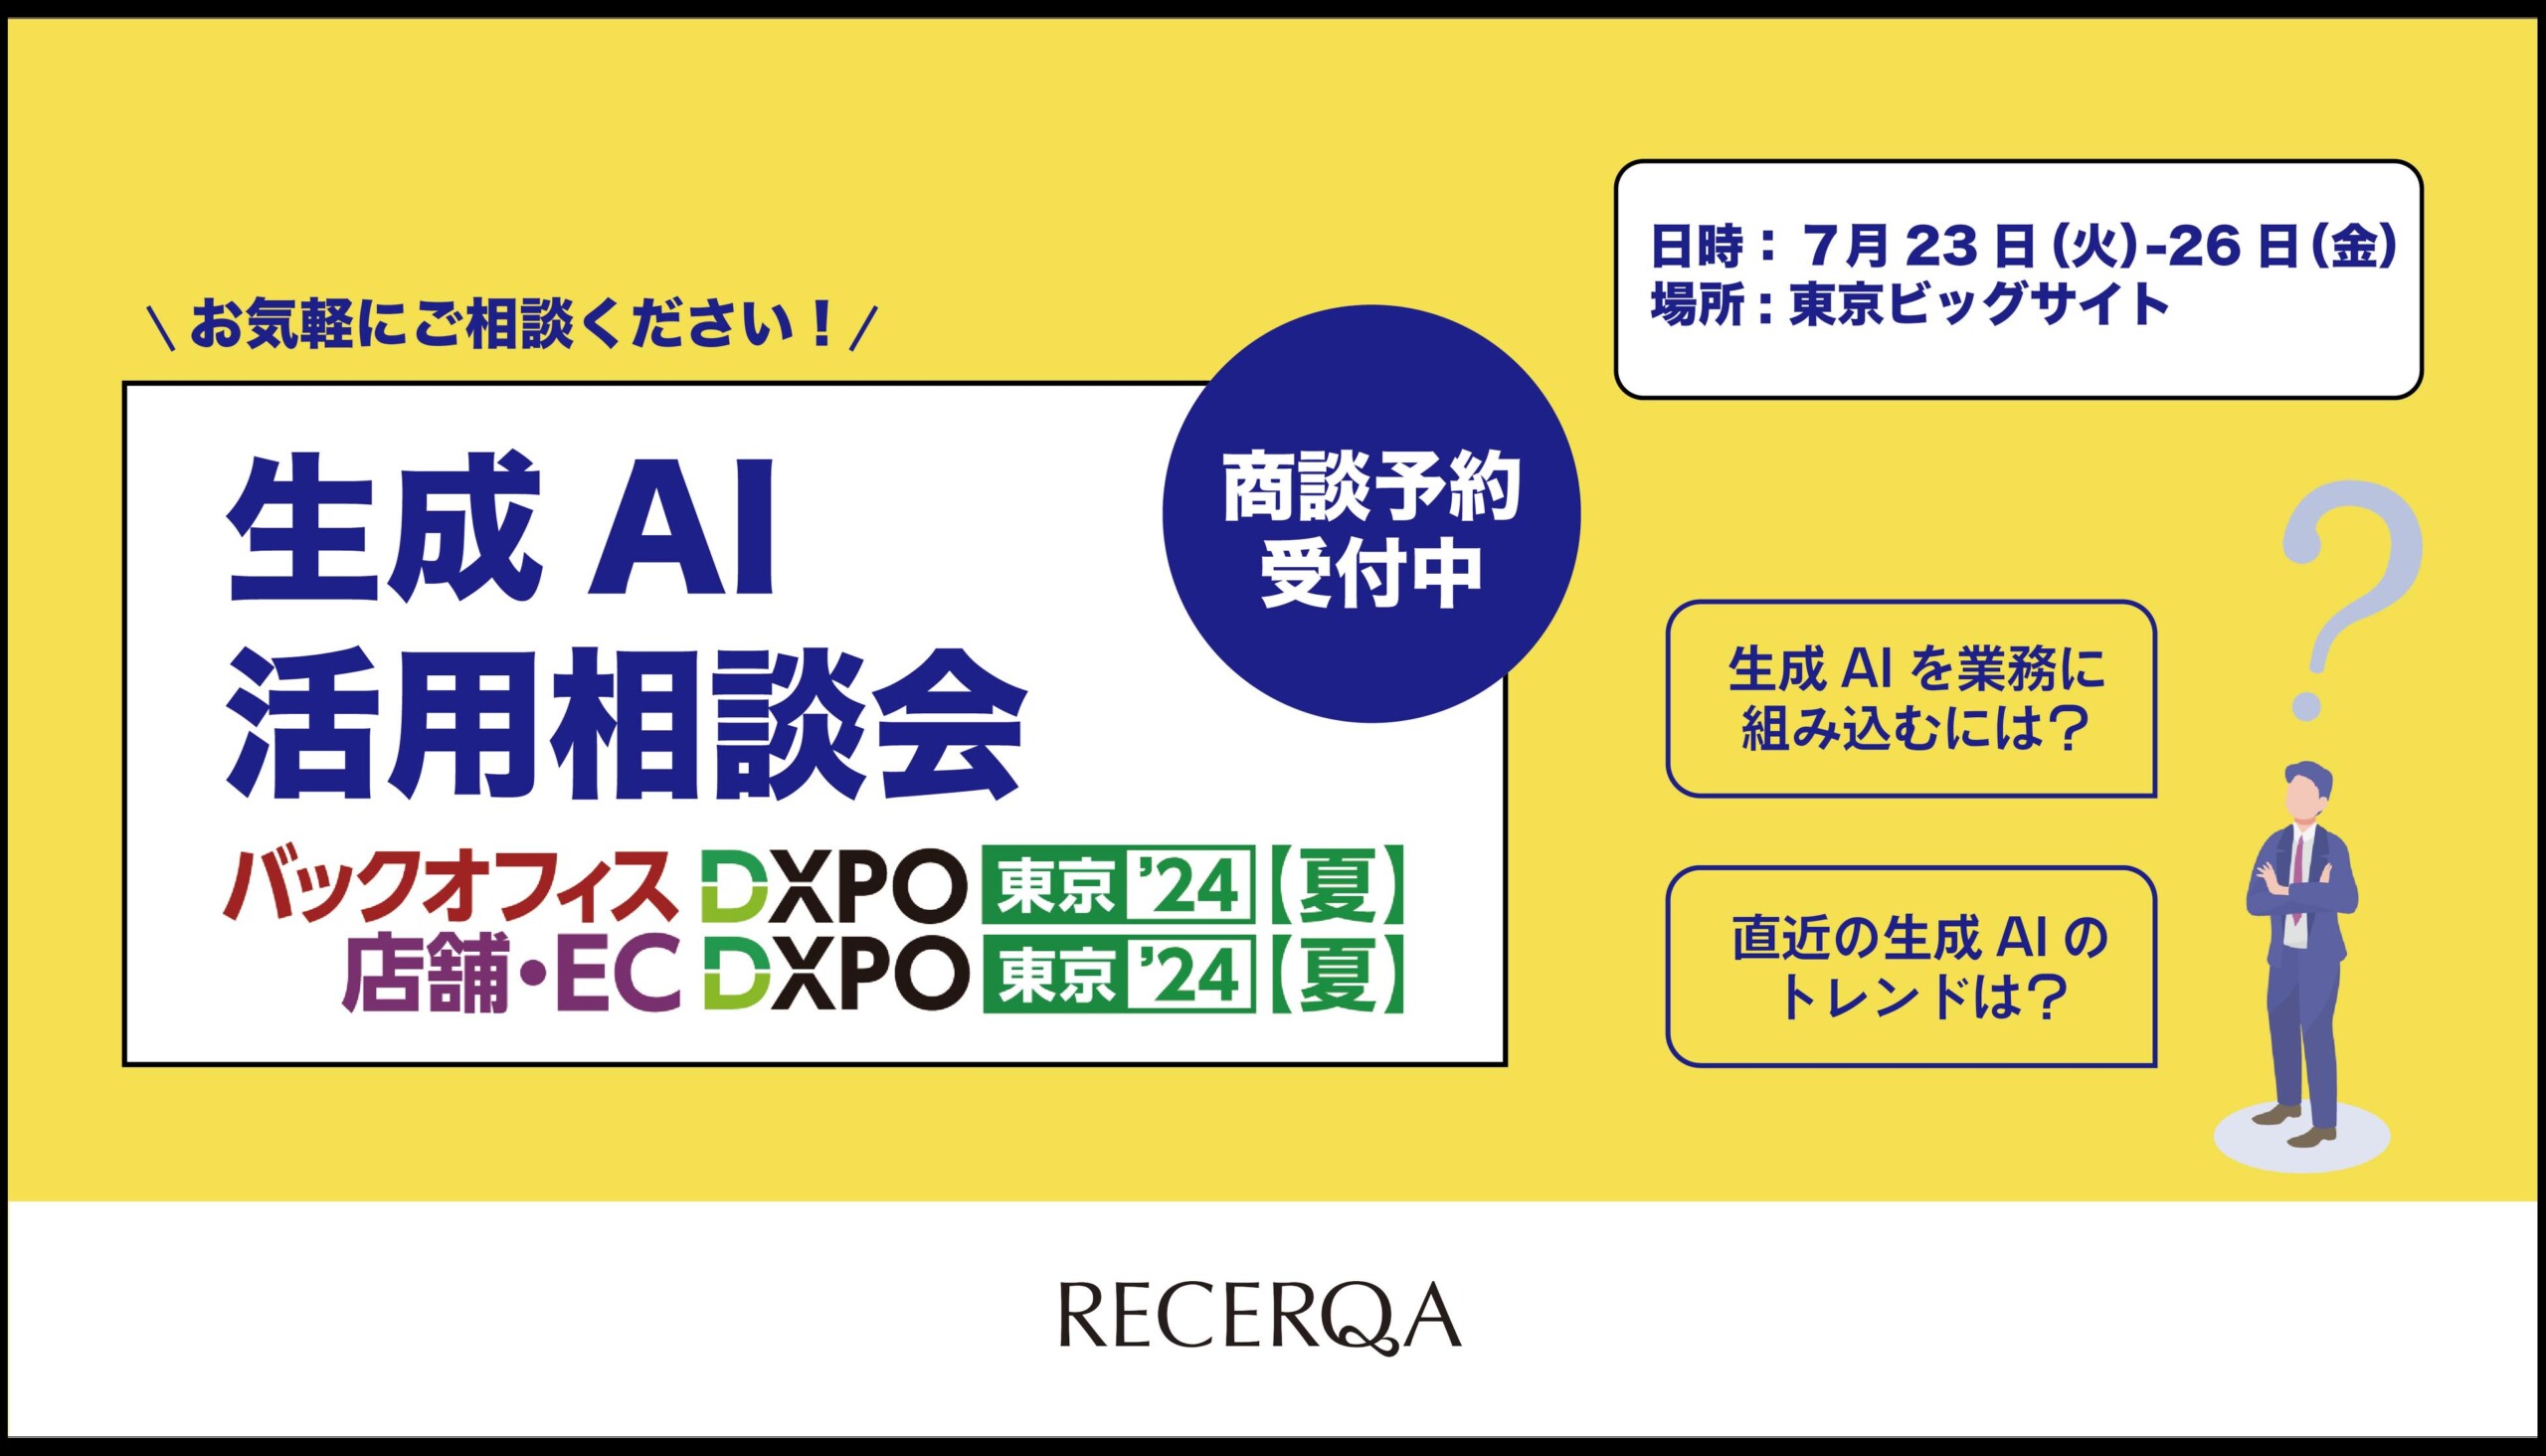 RECERQA、生成AI活用相談会をDXPO 東京【夏】にて実施